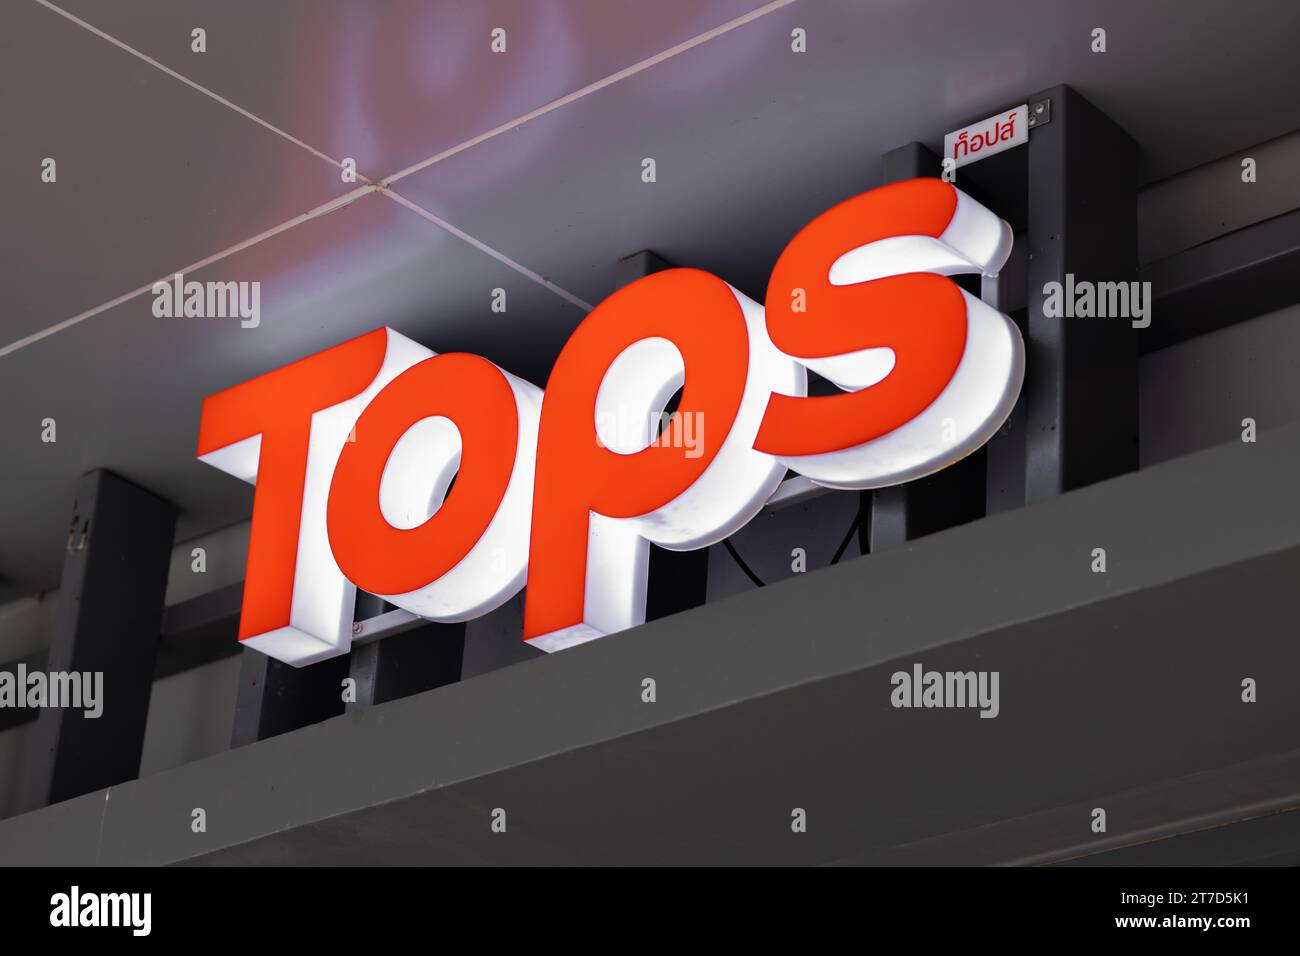 Tops brandneues Logo, beliebte Lebensmittelkette in der thailändischen American Tops Markets Kette unter dem Namen Tops Supermarket by Central Retail. November 2023, Stockfoto